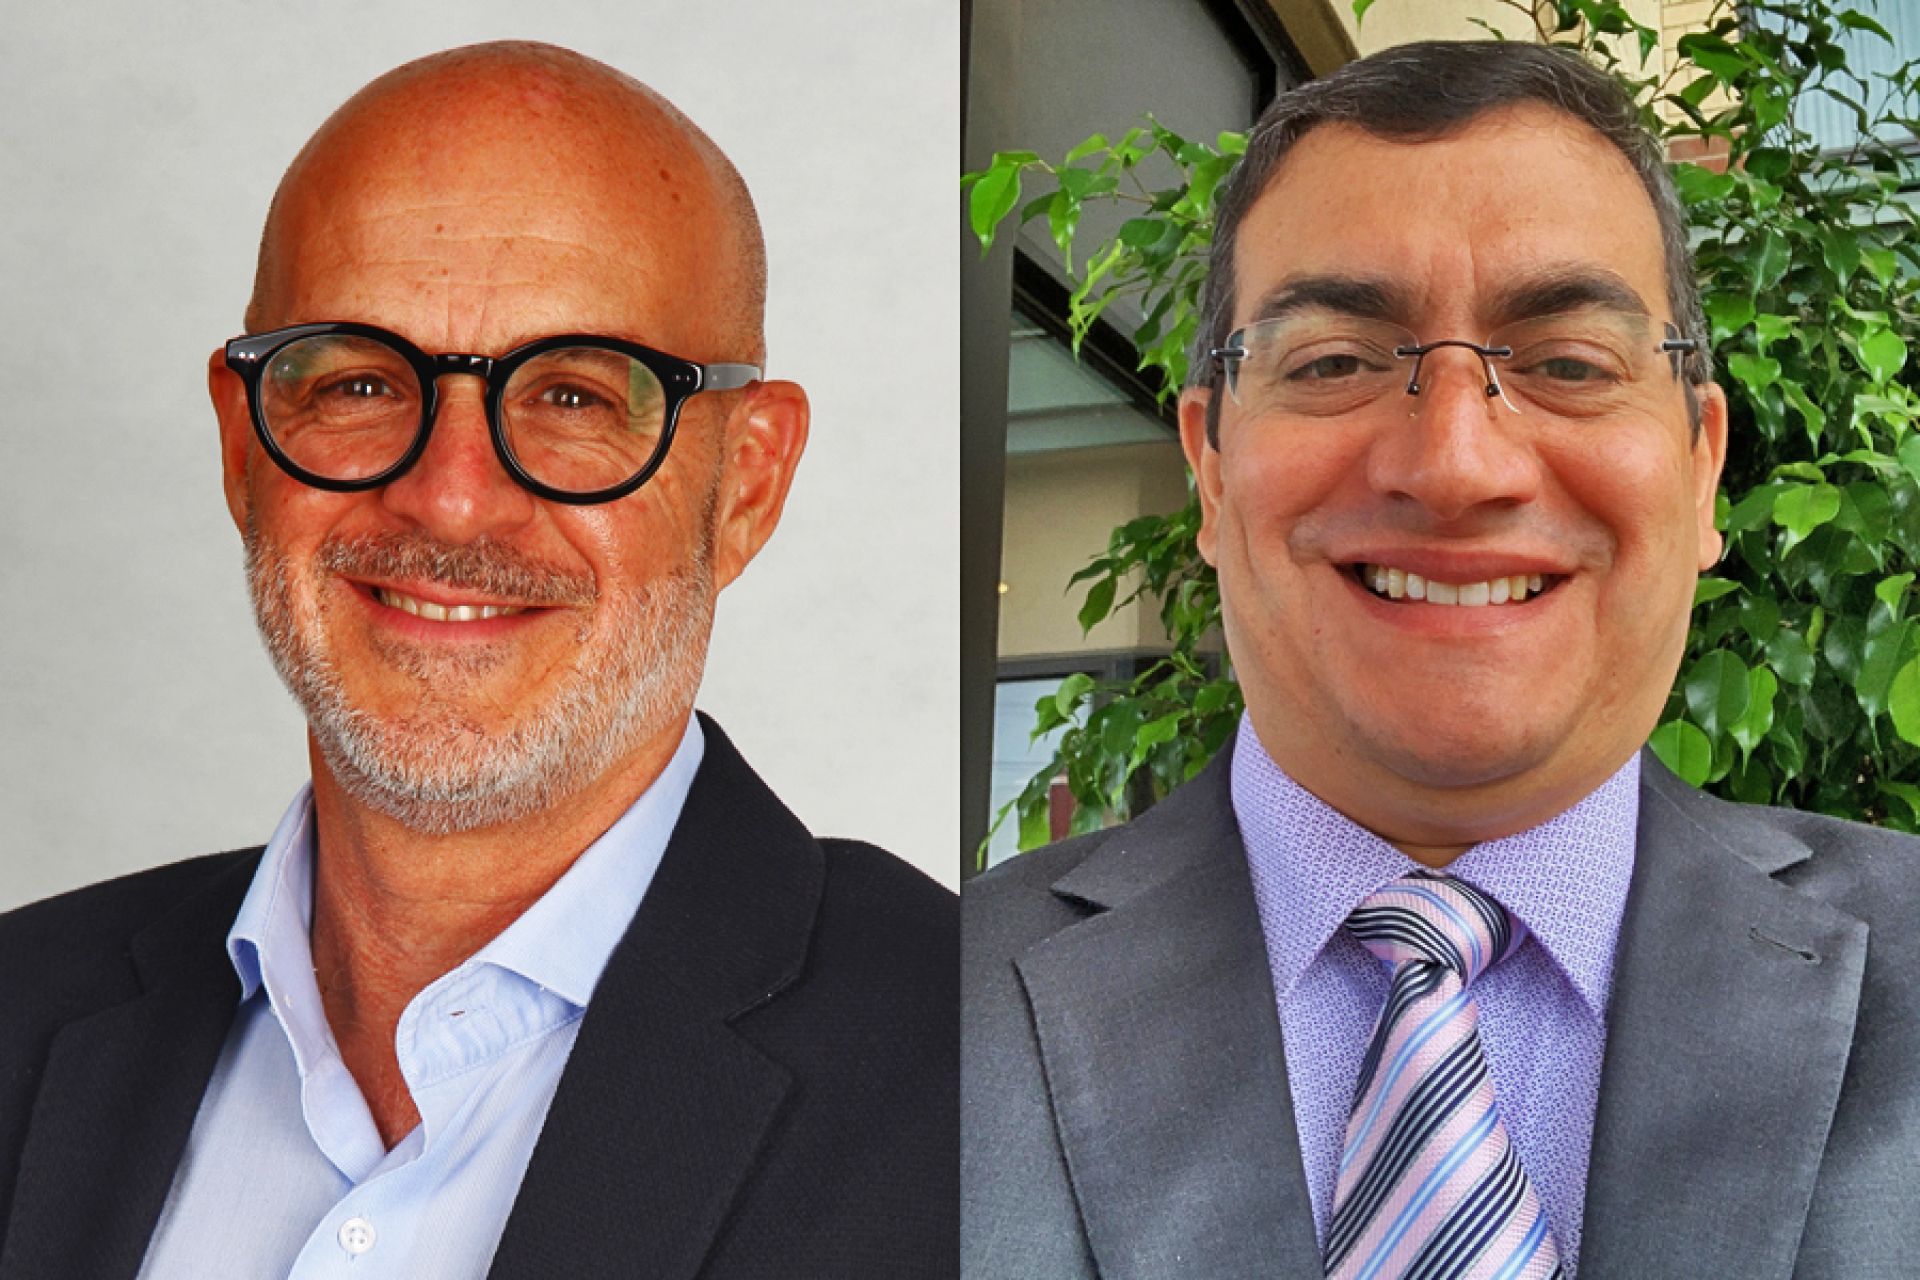 Se trata de Gilberto Garza, vicepresidente de ventas para mercados hispanohablantes de Latinoamérica, y Carlos González, nuevo director de ventas de partners en la misma región.